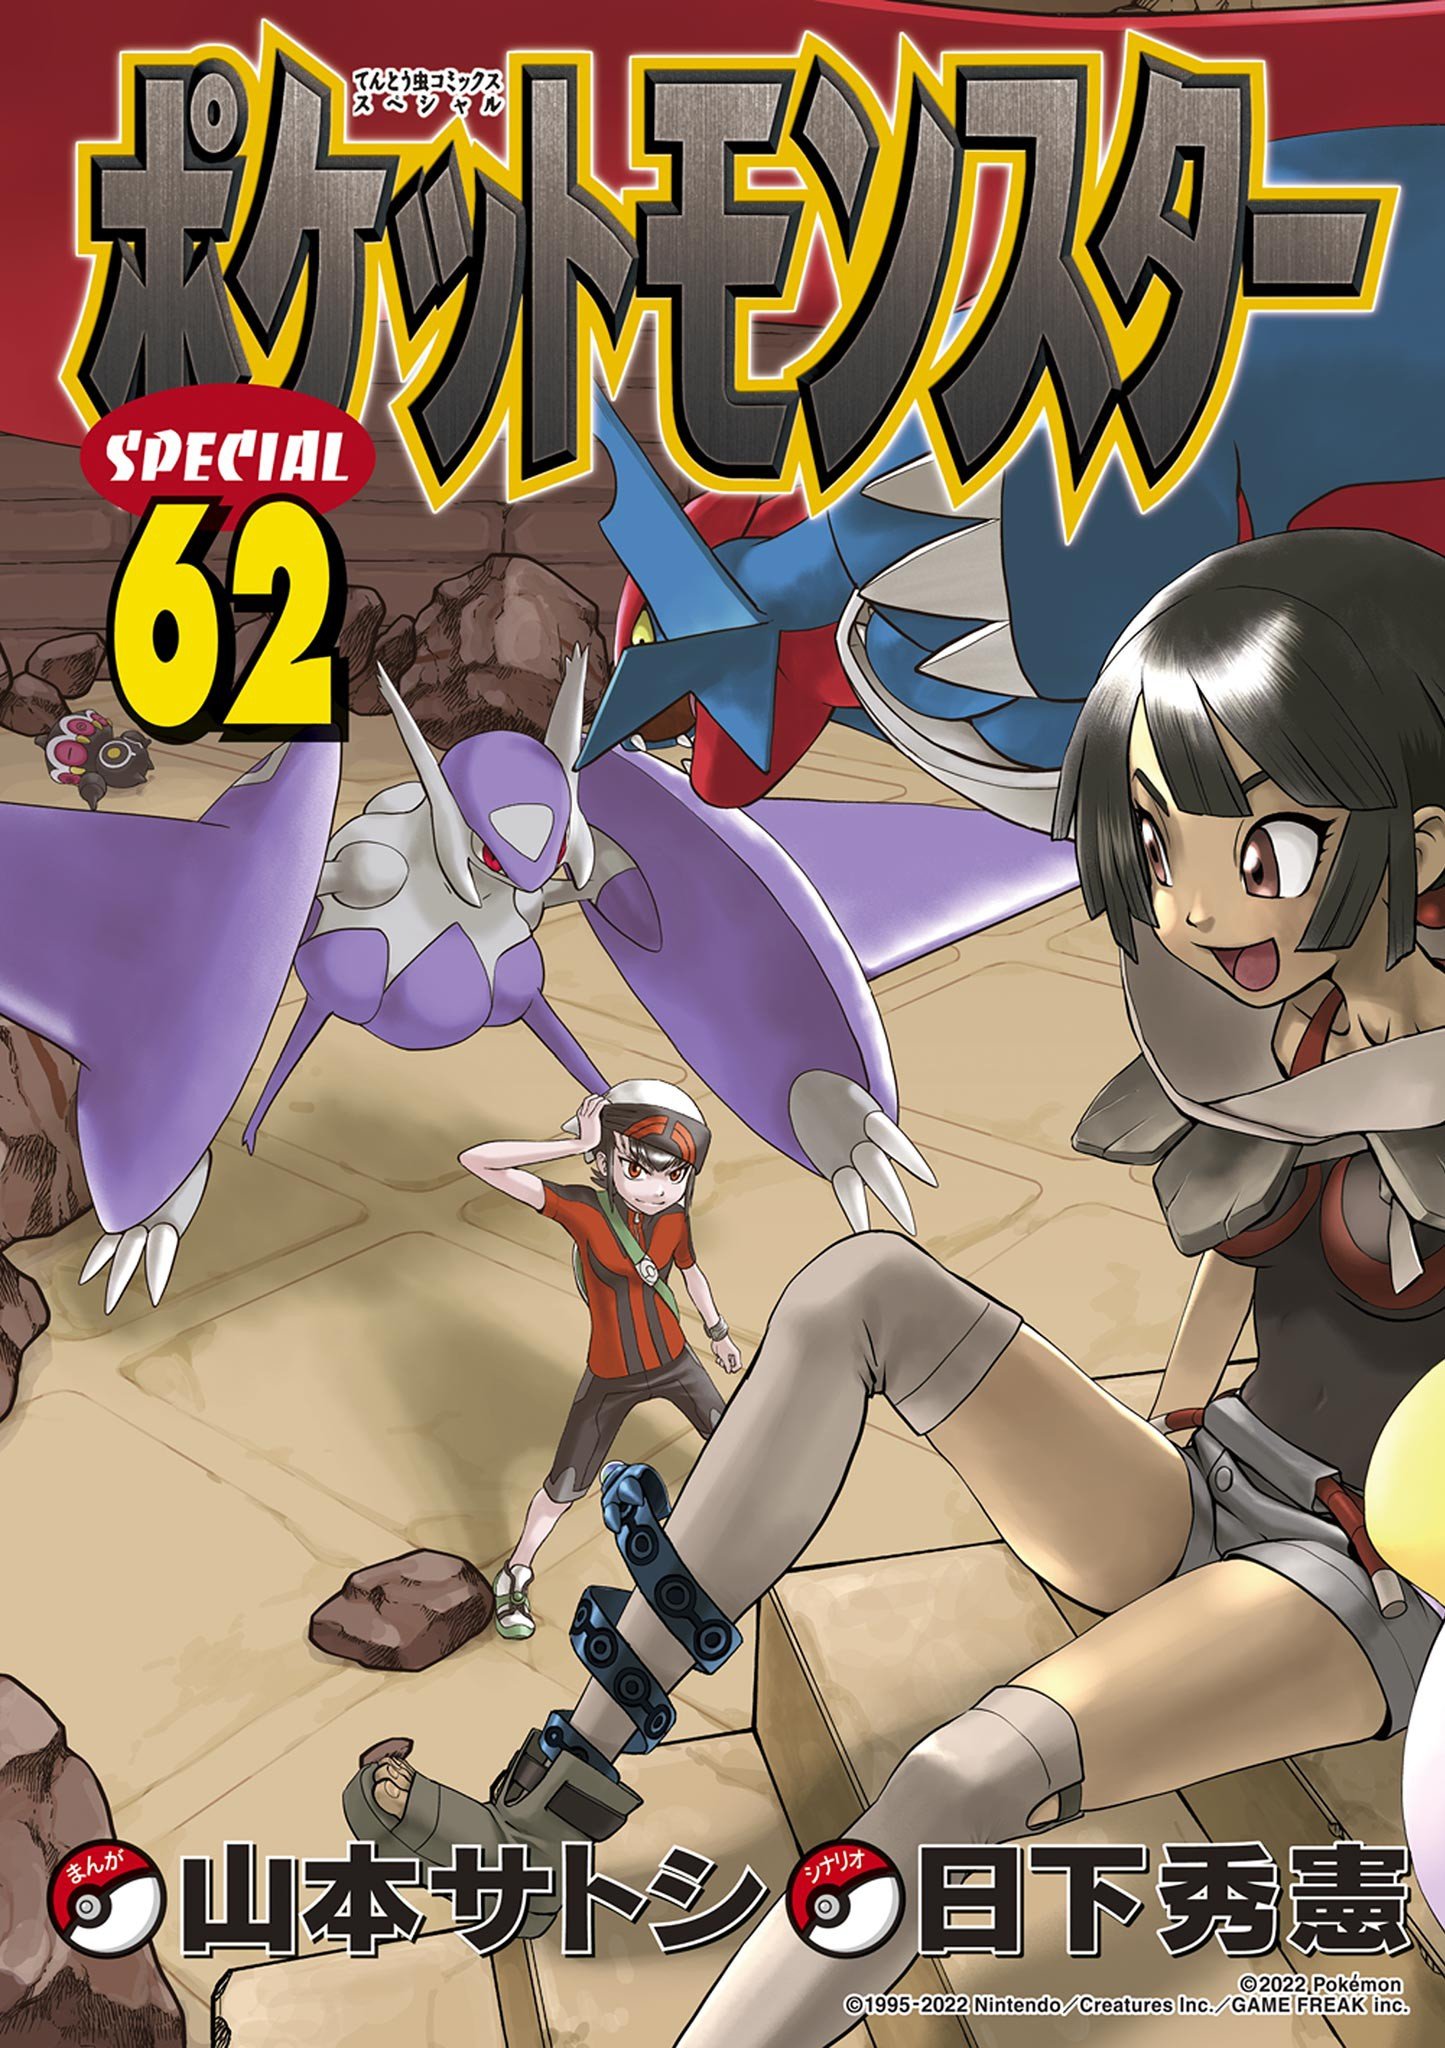 Pokémon Special cover 2